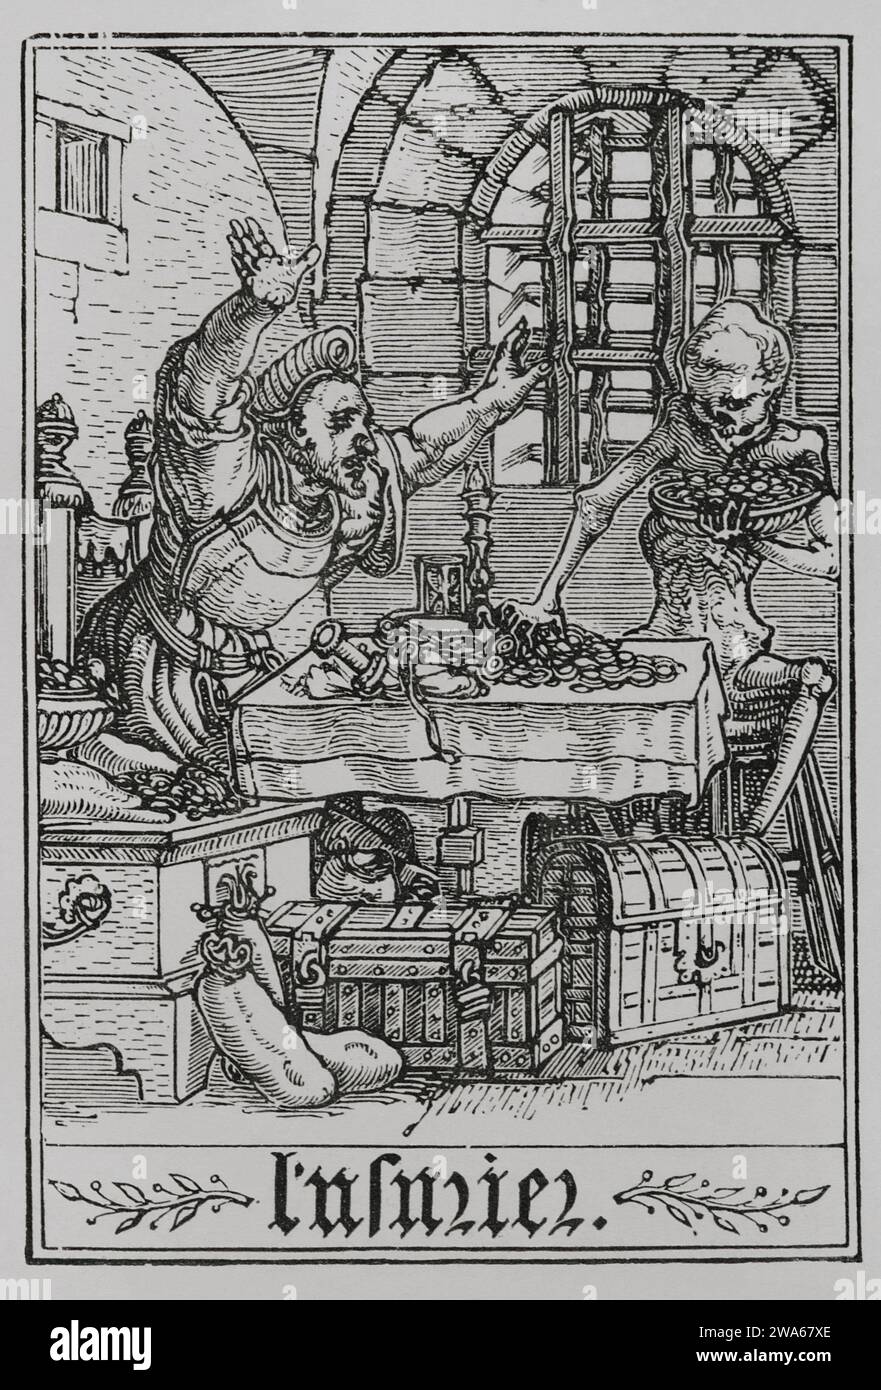 Le miser. Représentation d'un homme riche qui s'est enfermé dans une pièce aux fenêtres barrées. Pièces de monnaie, coffres et sacs d'argent tout autour de lui. Un squelette essaie de prendre des pièces de la table, étant réprimandé par l'homme qui ne semble pas en avoir peur. Fac-similé d'une gravure appartenant à la série 'la danse de la mort' de Hans Holbein le Jeune, dans 'les Simulachres et histoires facies de la mortt', 1538. Vie militaire et religieuse au Moyen Age et a l'époque de la Renaissance. Paris, 1877. Banque D'Images